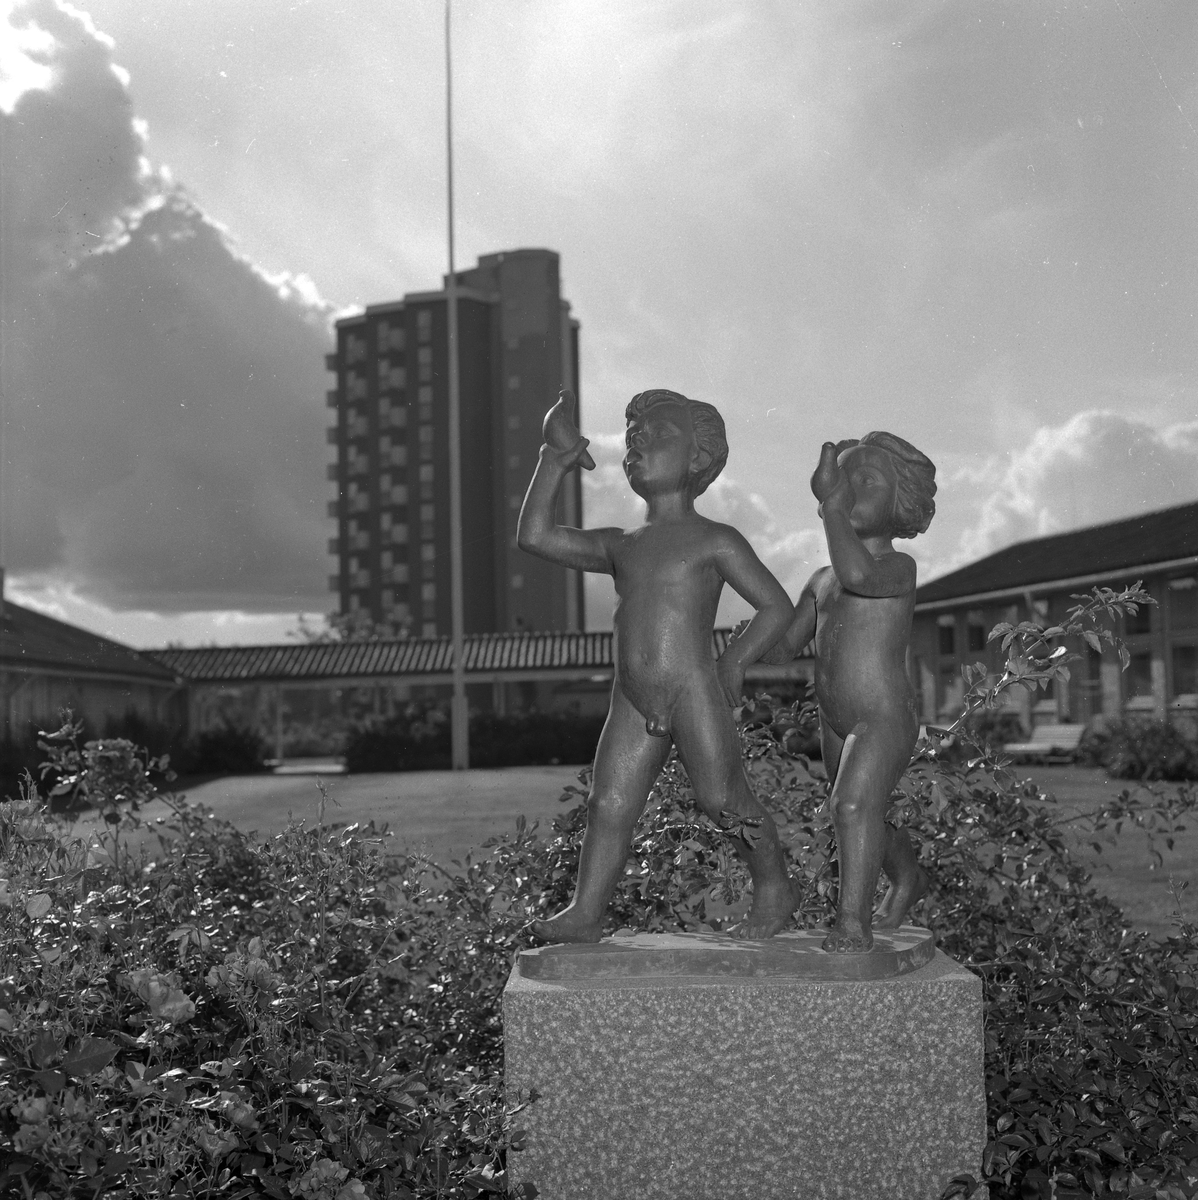 Valdagen.
Skulptur i bostadsområdet Stjärnhuset.
17 september 1955.